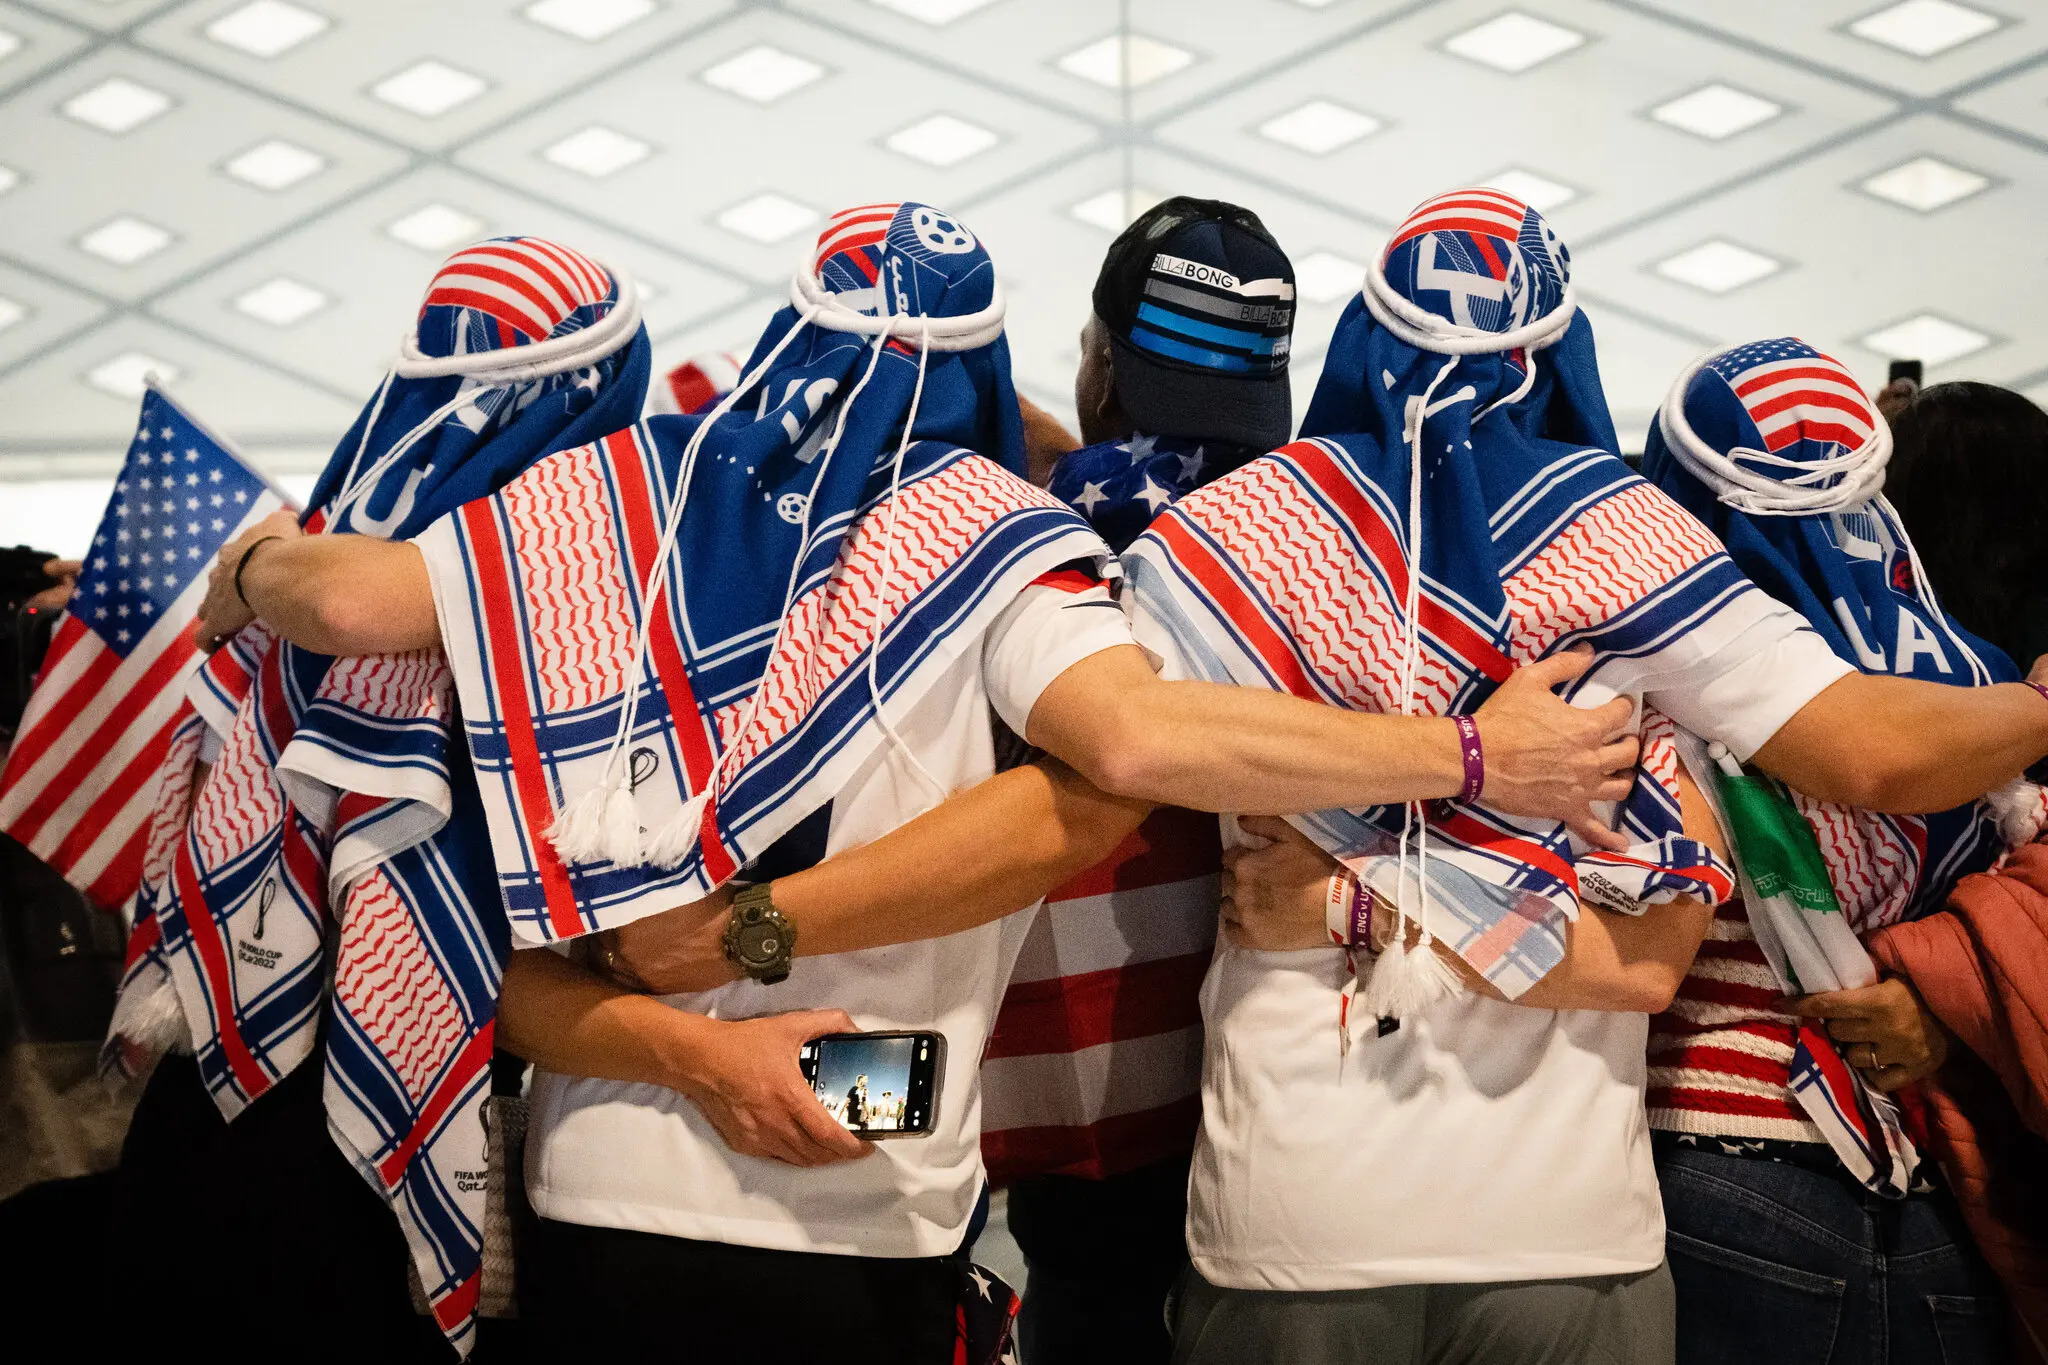 Nhóm cổ động viên bóng đá đội ghutra có màu sắc sặc sỡ tại Qatar (ảnh: NY Times)